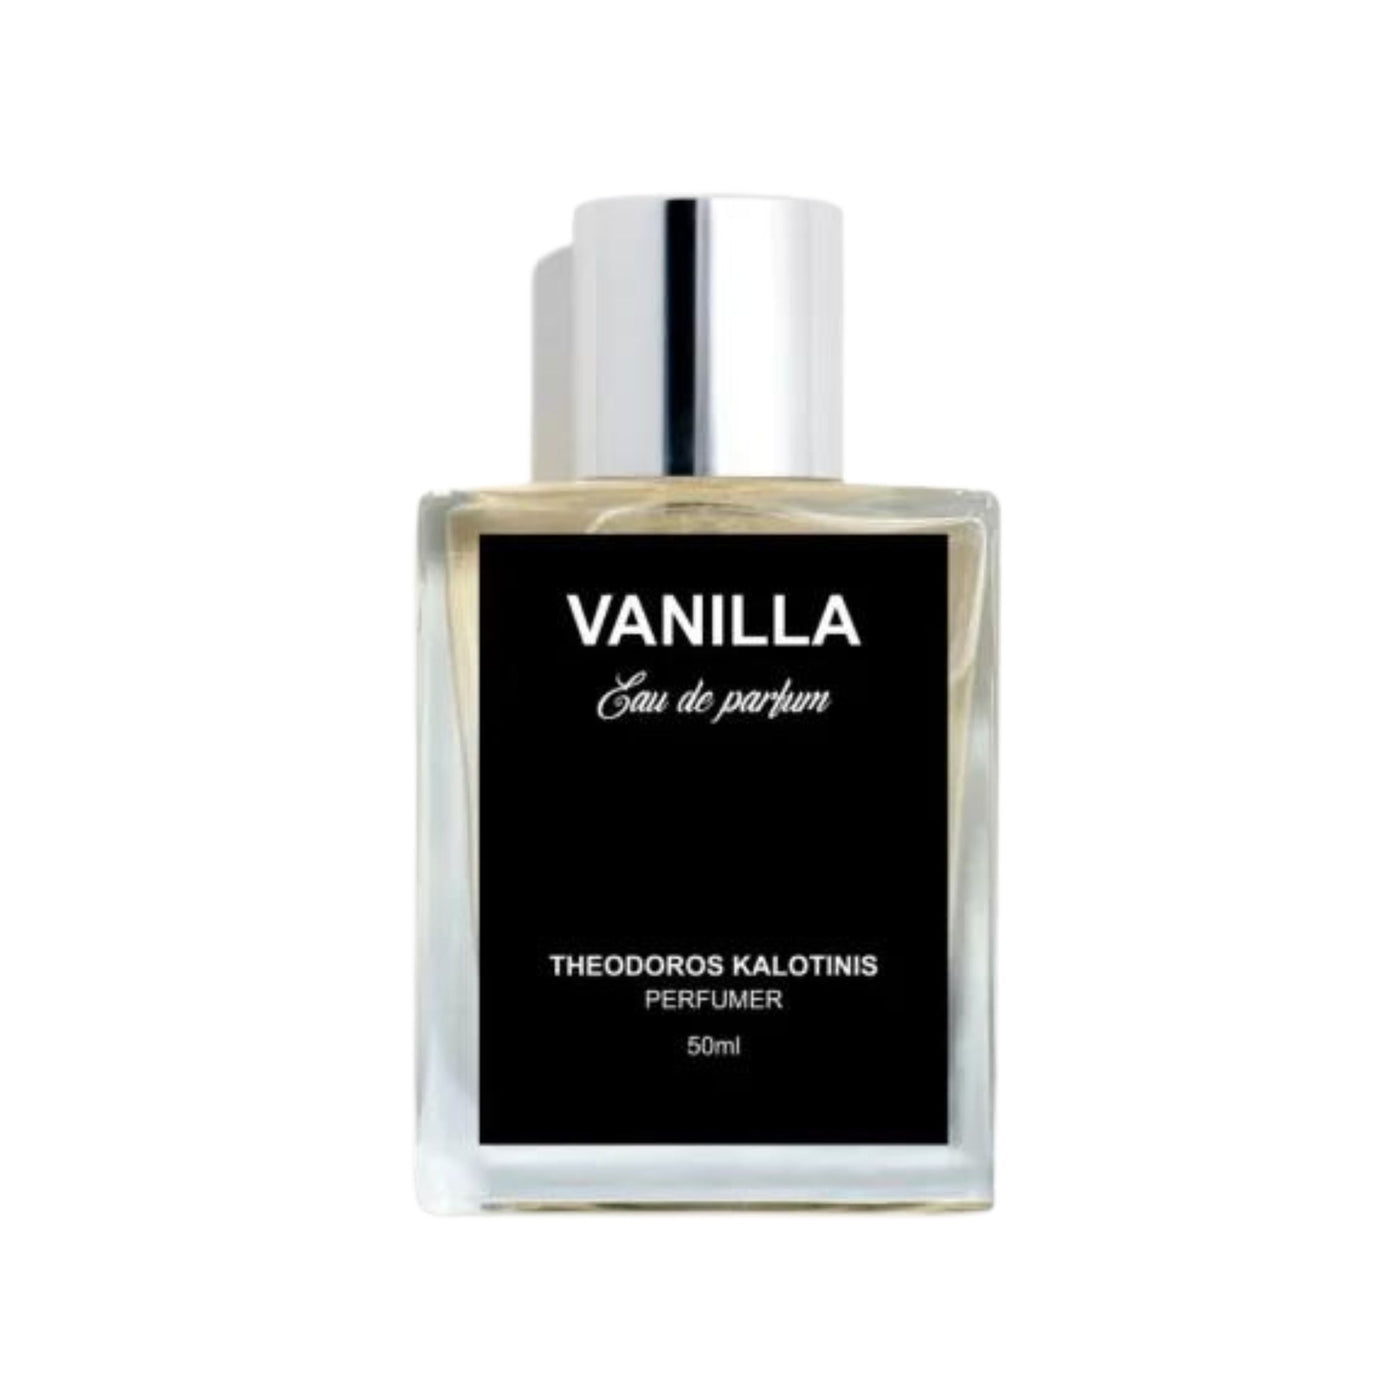 Vanilla Theodoros Kalotinis perfume